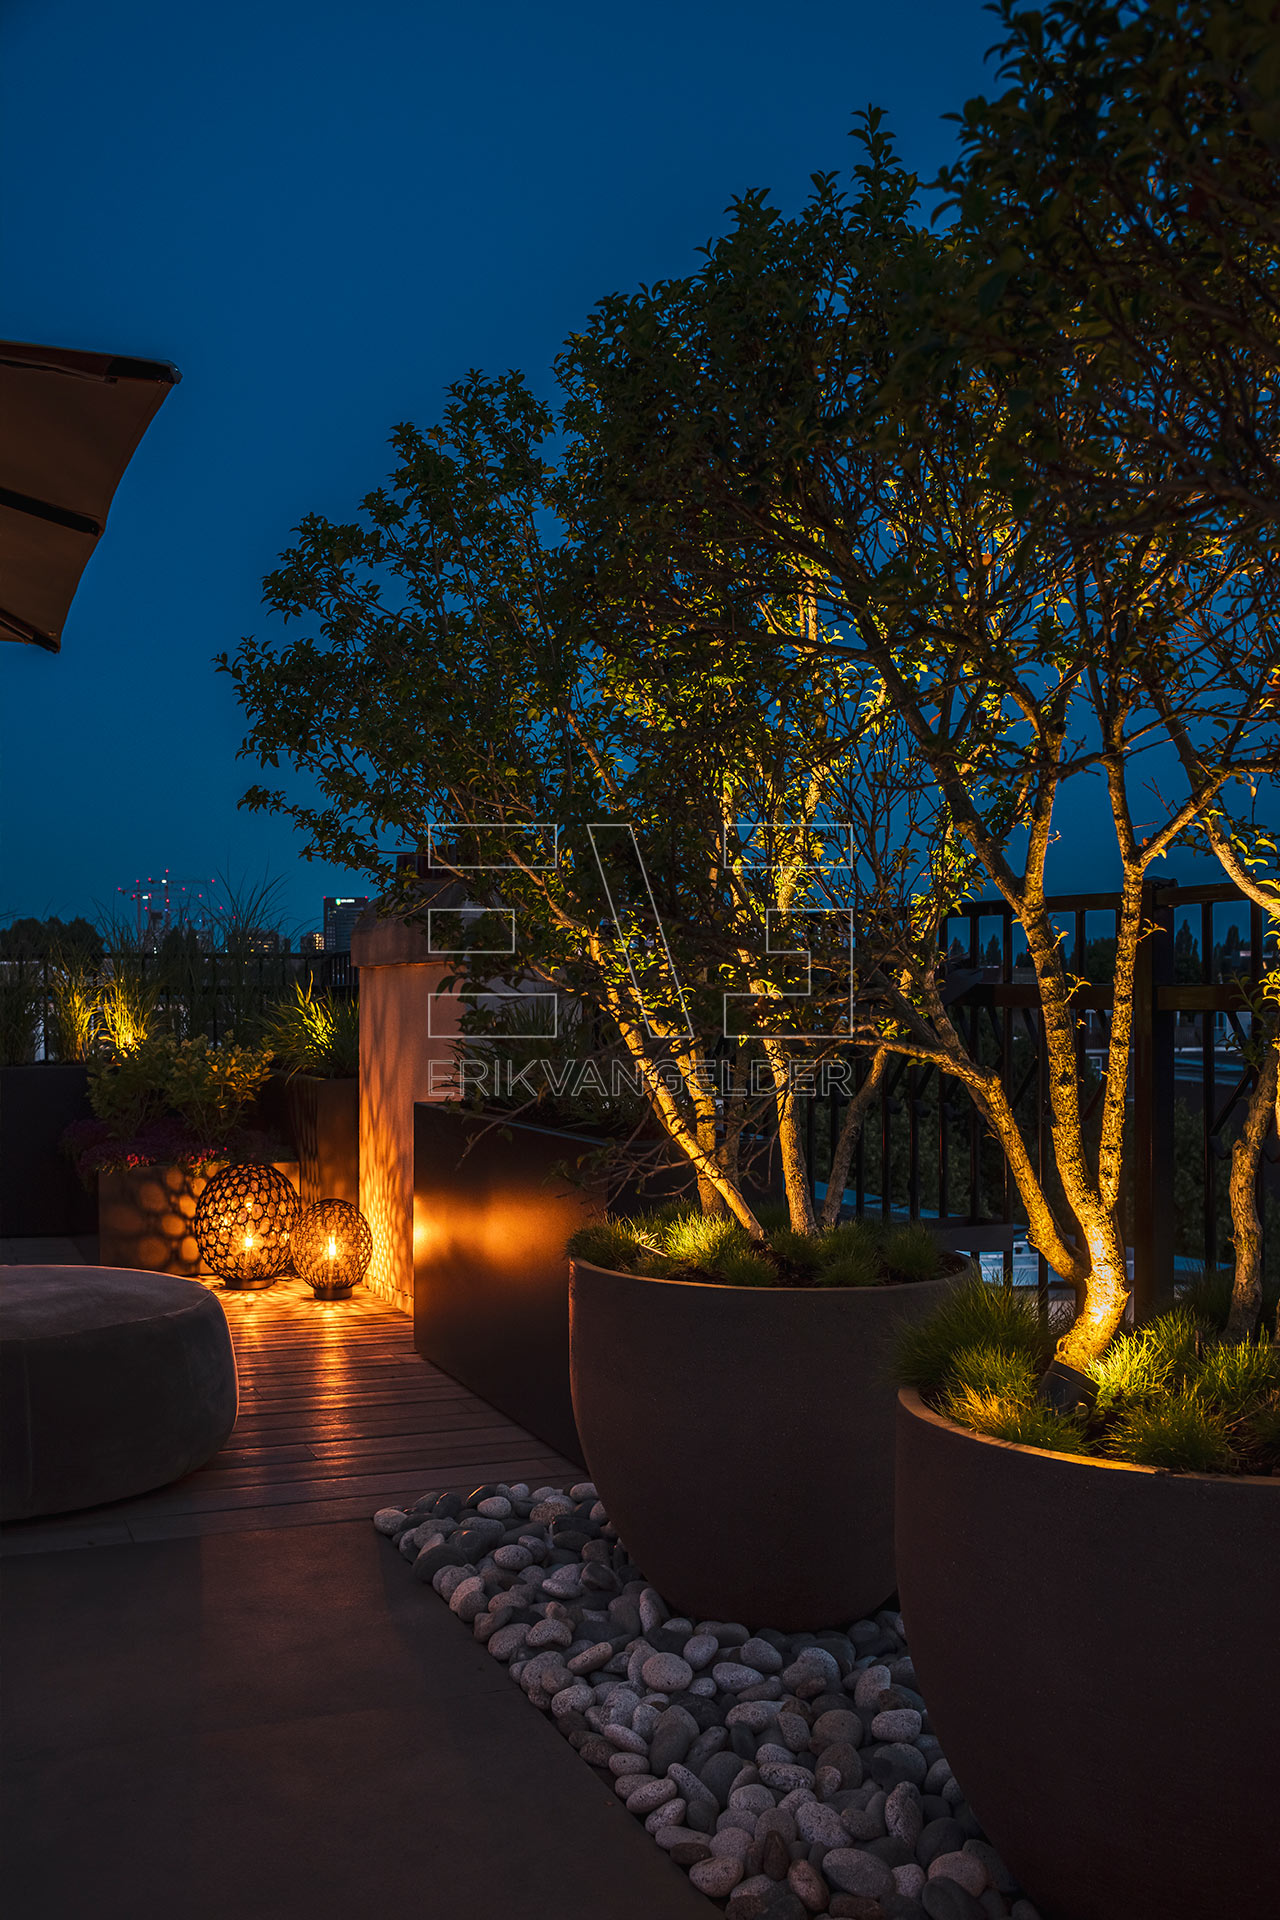 Avond sfeer verlichting lantaarns daktarras tuindesign gardendesign erikvangelder tuinarchitect exclusive gardens luxury modern sfeer